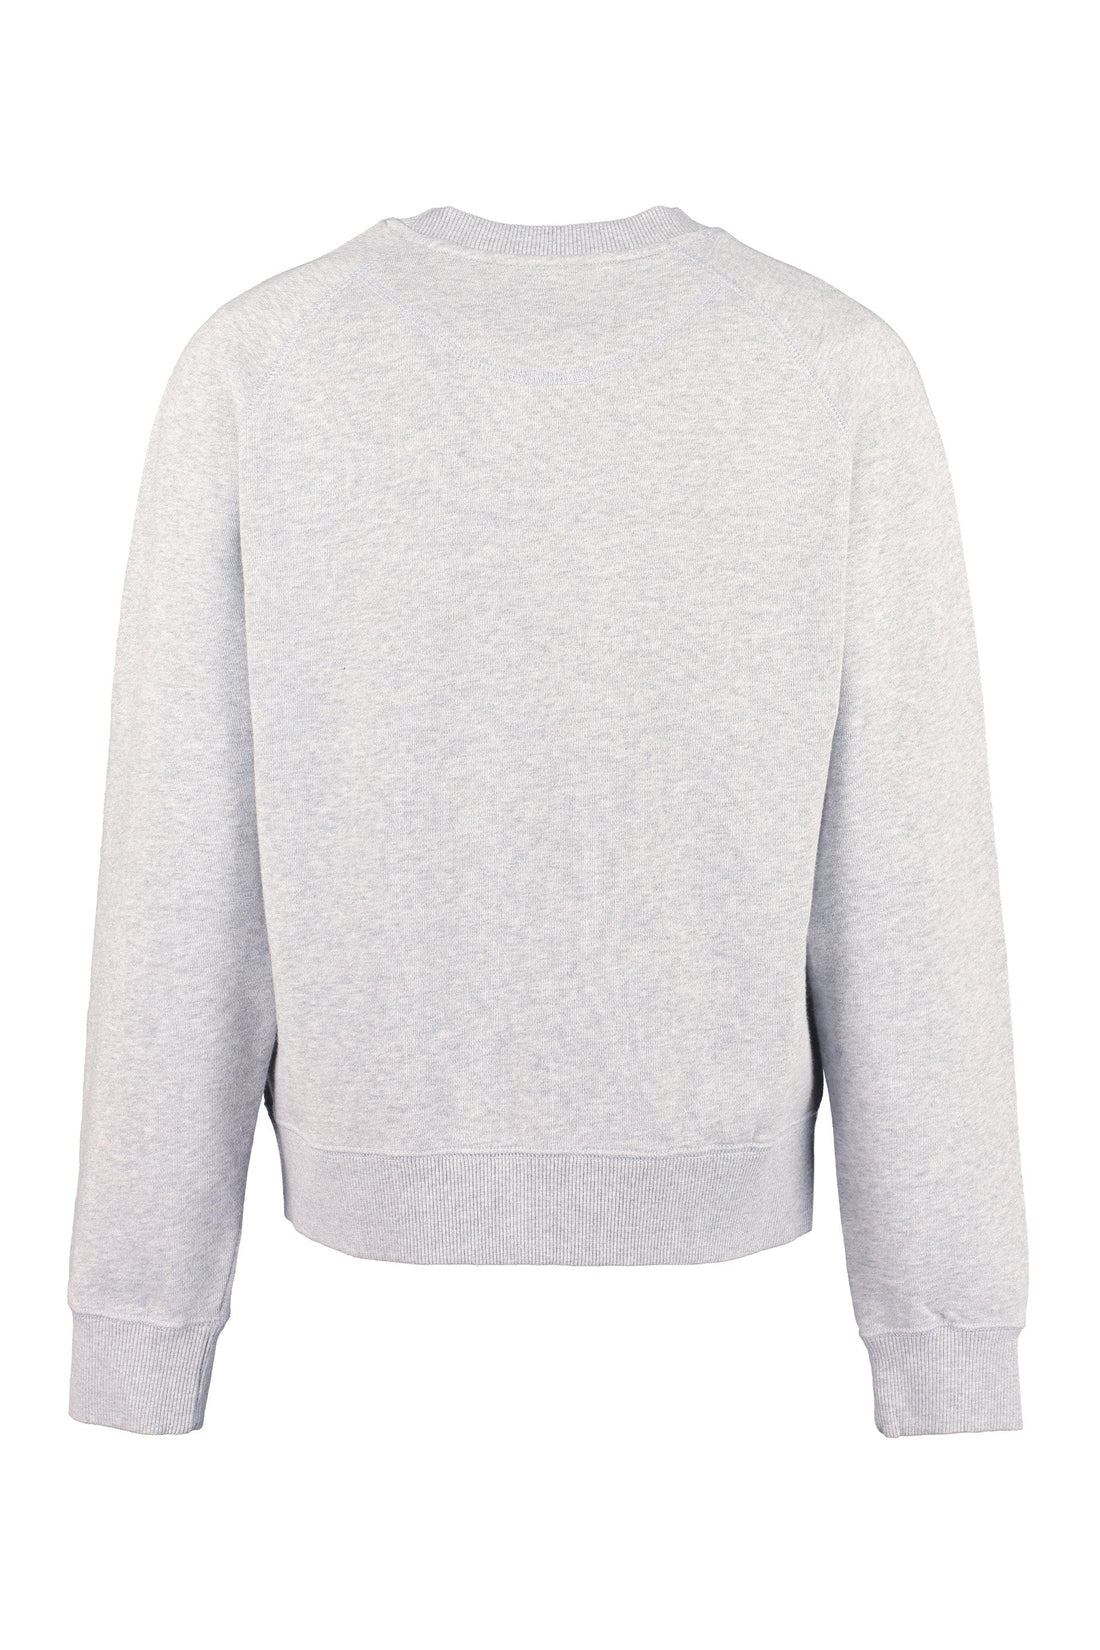 Maison Labiche-OUTLET-SALE-Embroidered cotton sweatshirt-ARCHIVIST